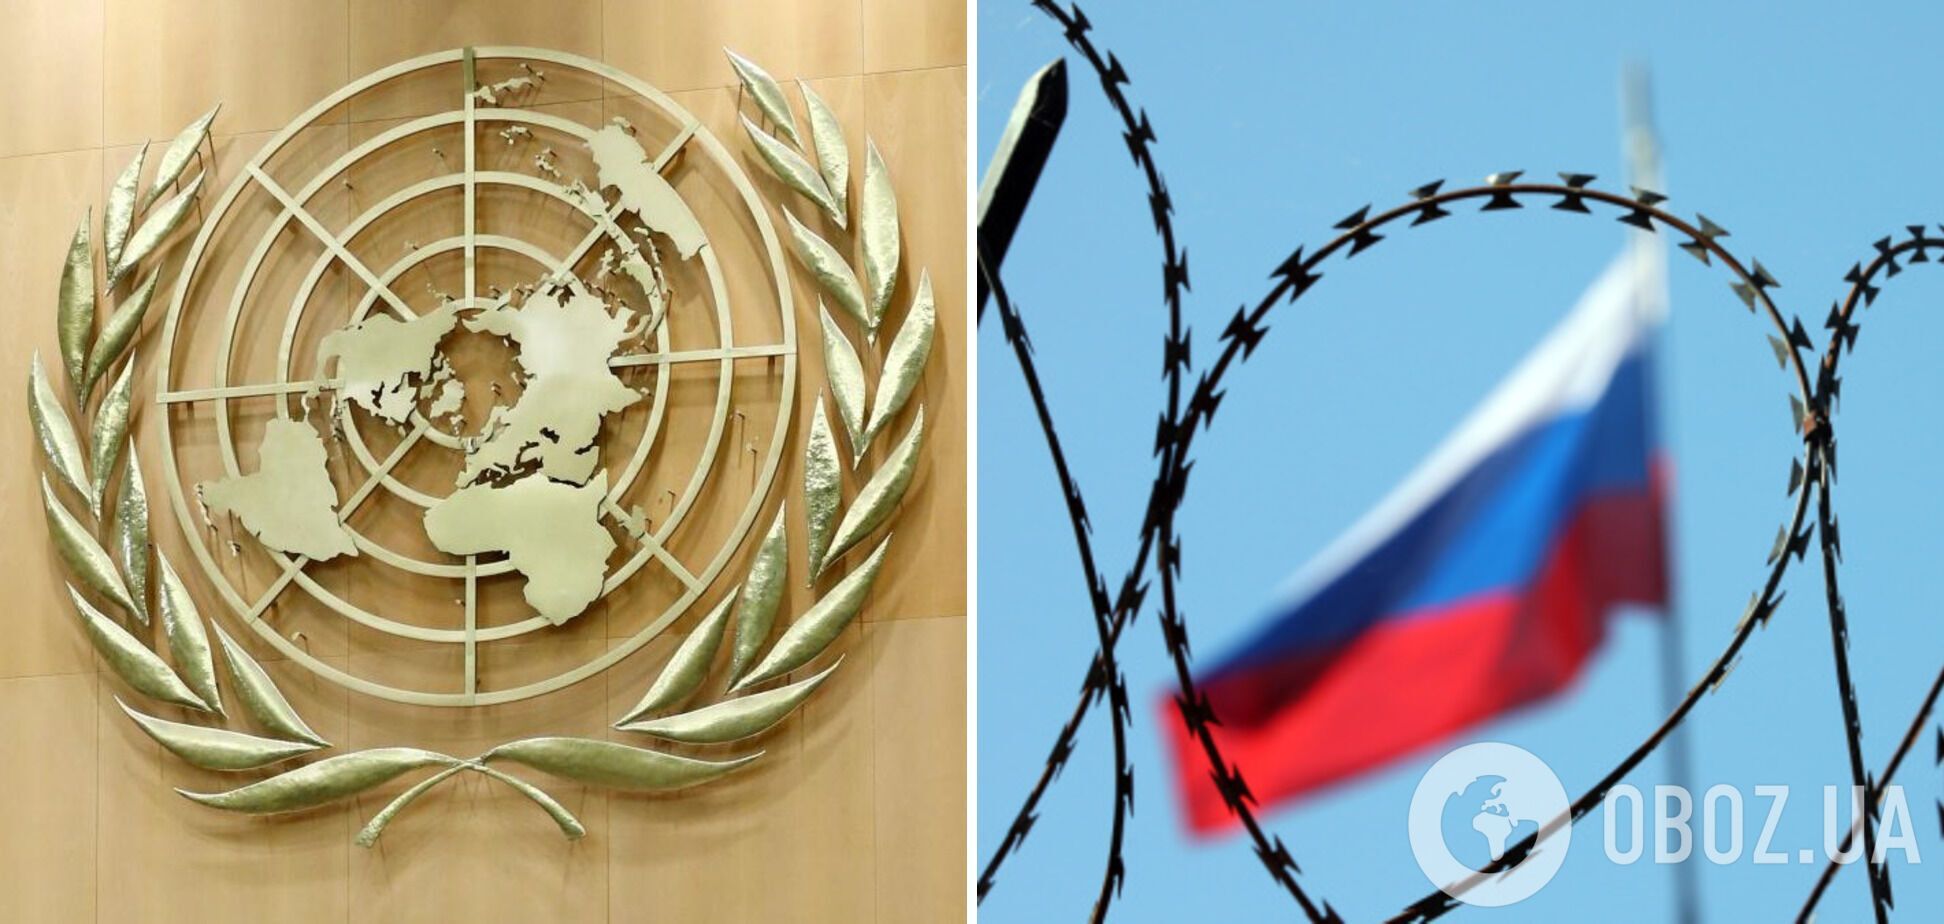 Комісія ООН підтвердила, що відповідальність за атаки на міста України несе Росія